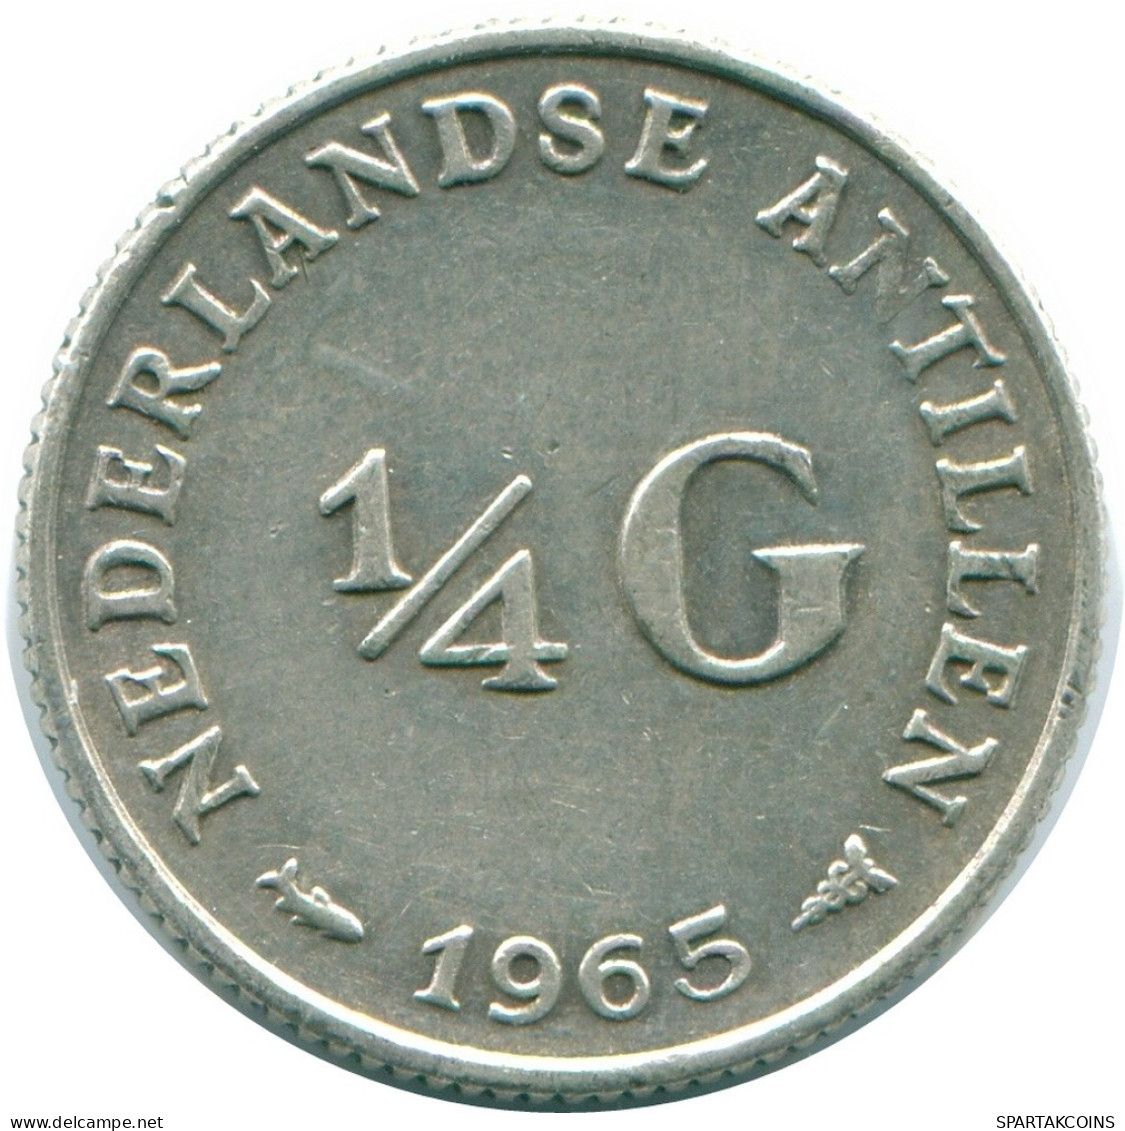 1/4 GULDEN 1965 NIEDERLÄNDISCHE ANTILLEN SILBER Koloniale Münze #NL11309.4.D.A - Nederlandse Antillen